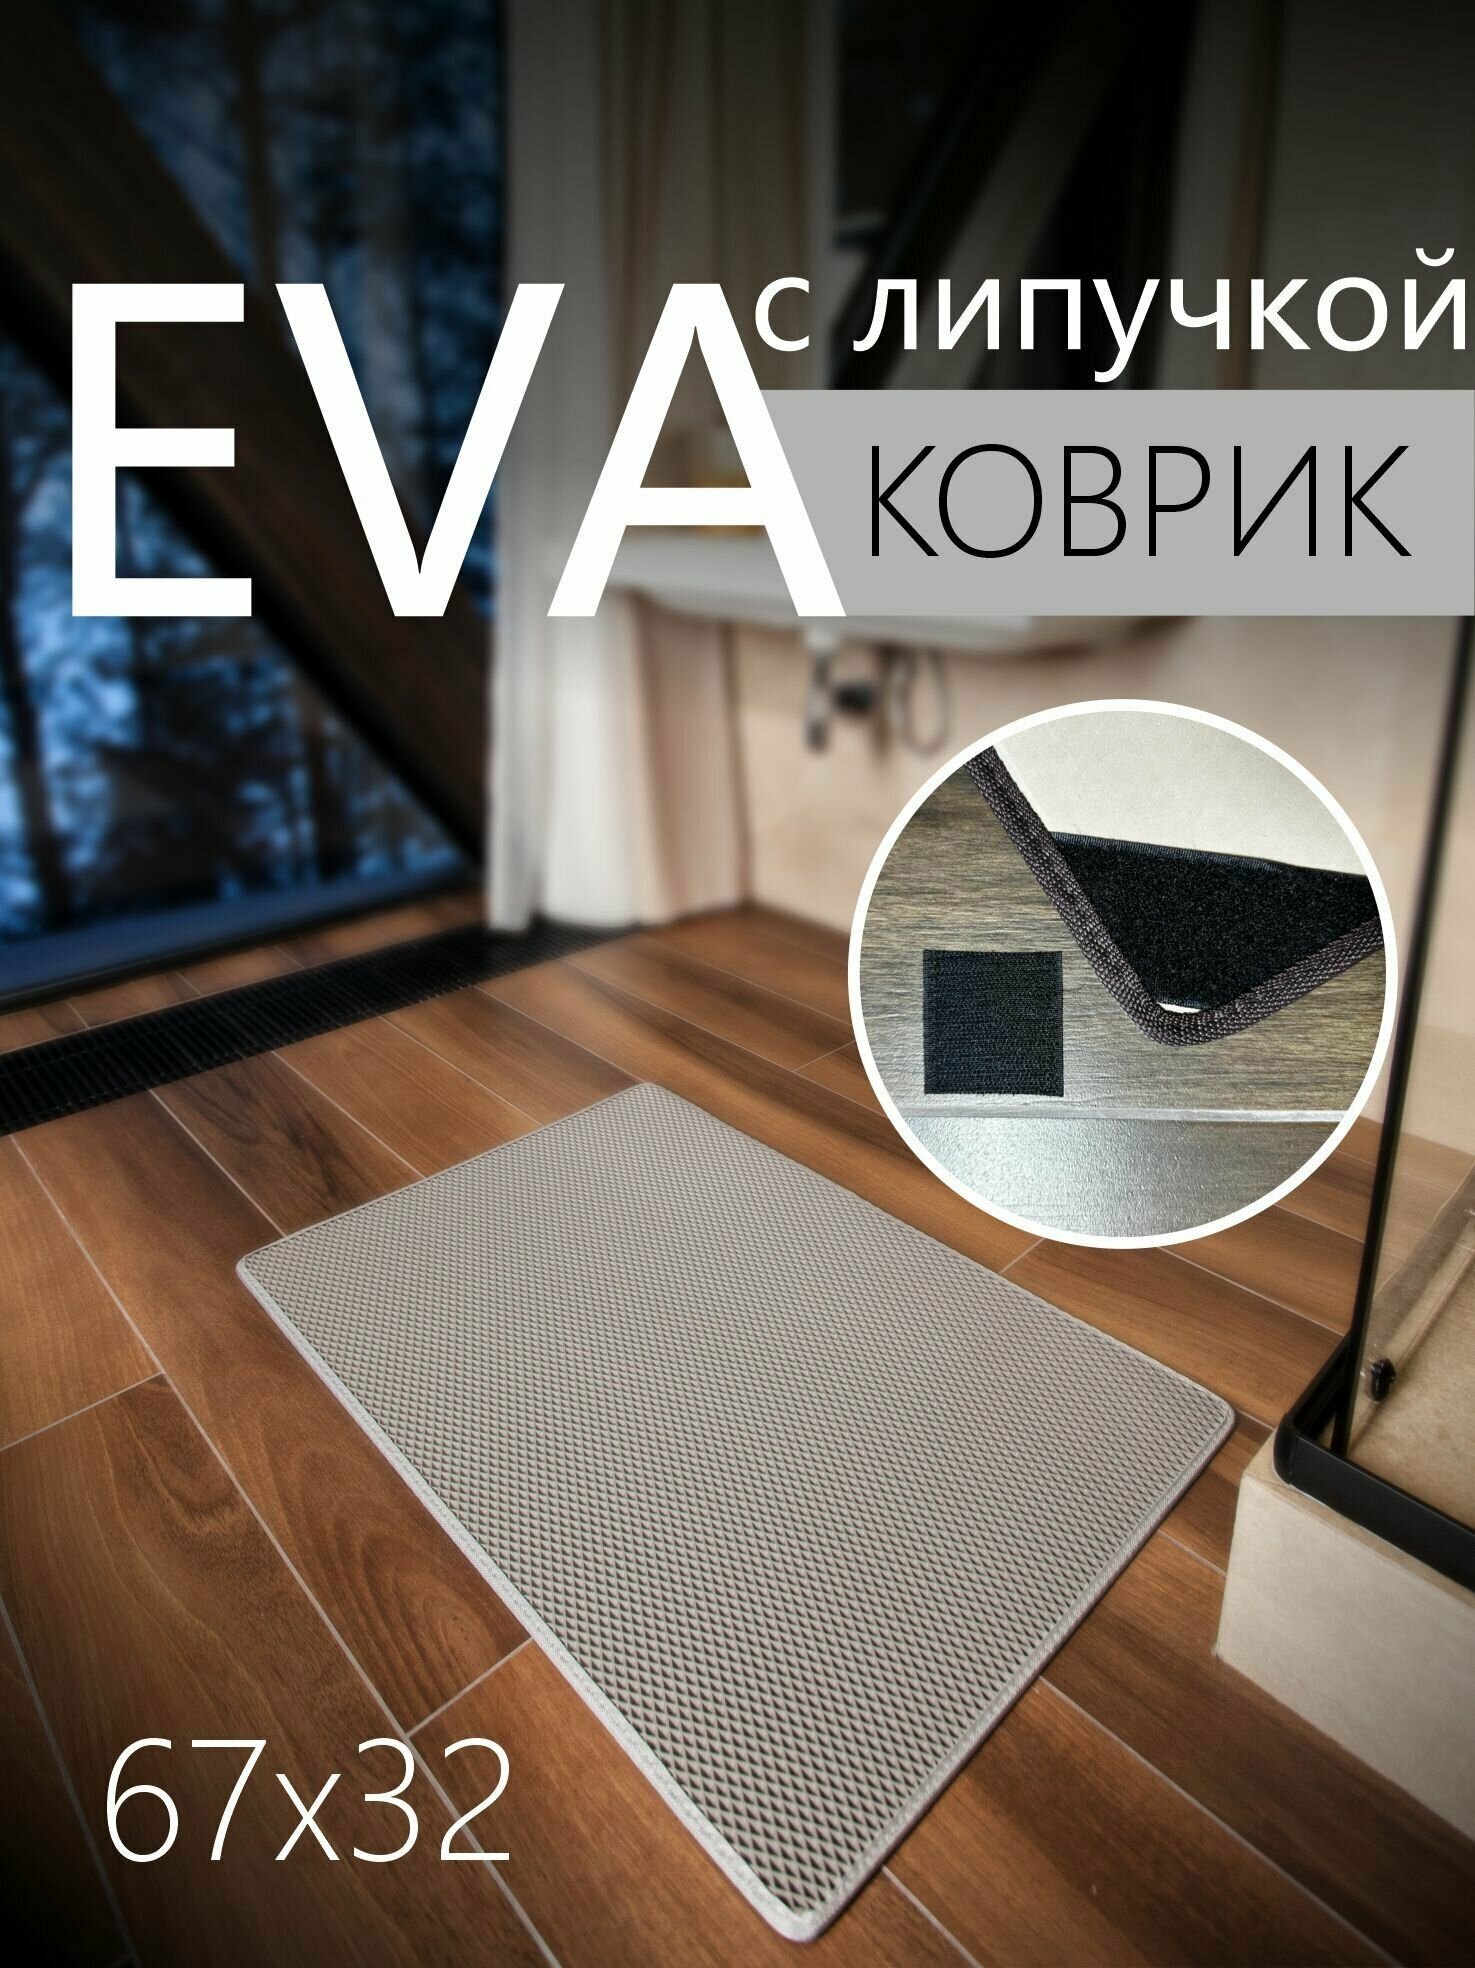 Коврик придверный противоскользящий EVA ЭВА универсальный 67х32 сантиметра. Липучки для фиксации. Ромб Серый со светло-серой окантовкой